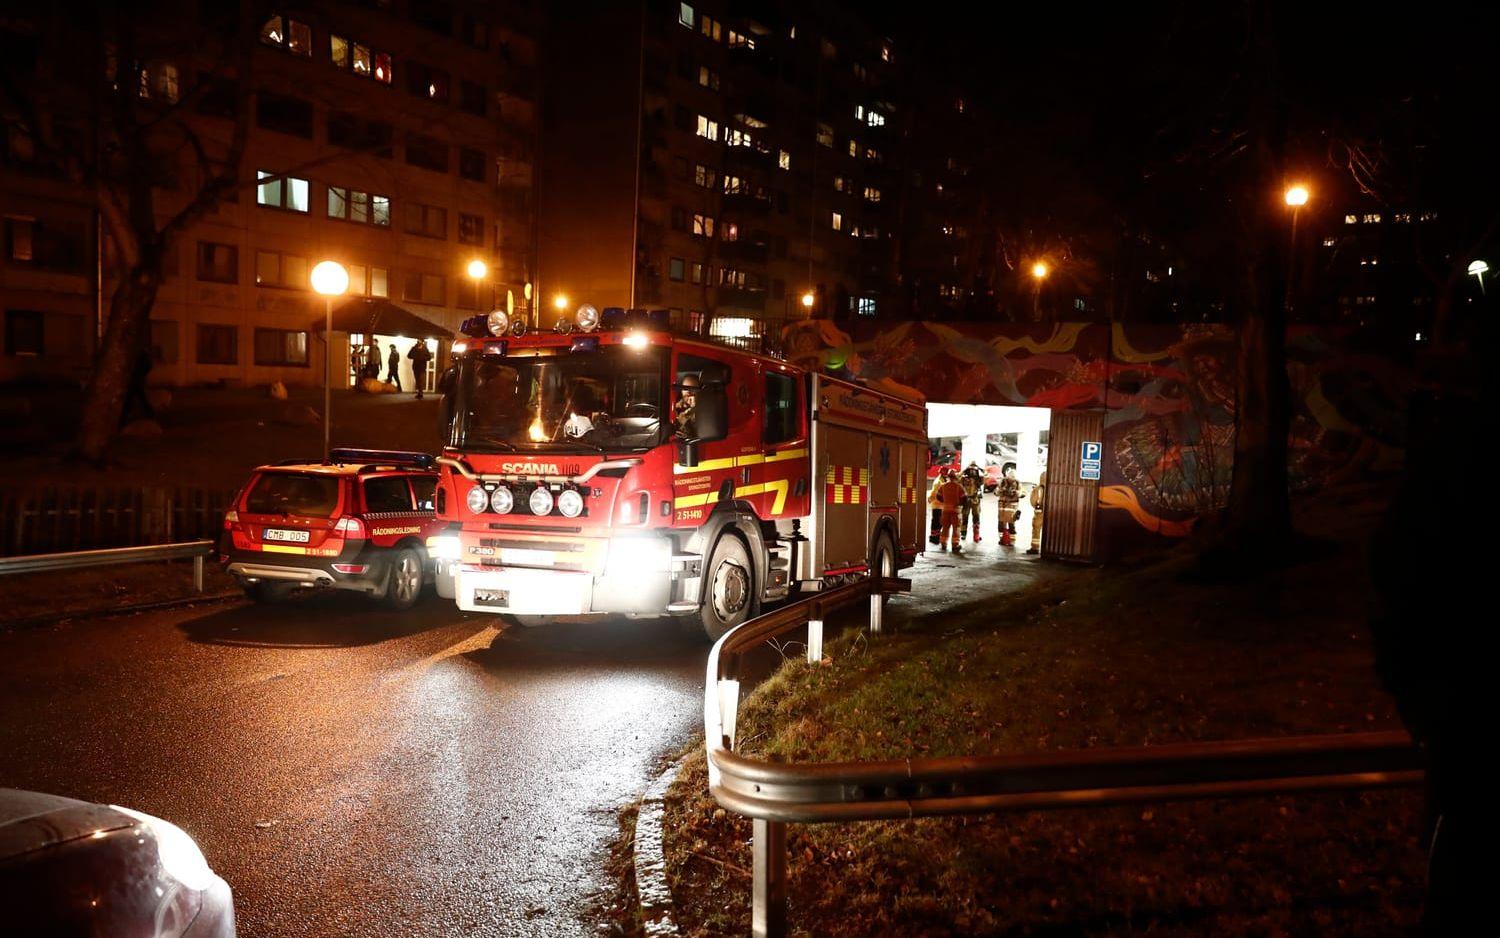 Polis och räddningstjänst på plats i Hammarkullen i Göteborg efter oroligheter och en bilbrand.  Bild: GP